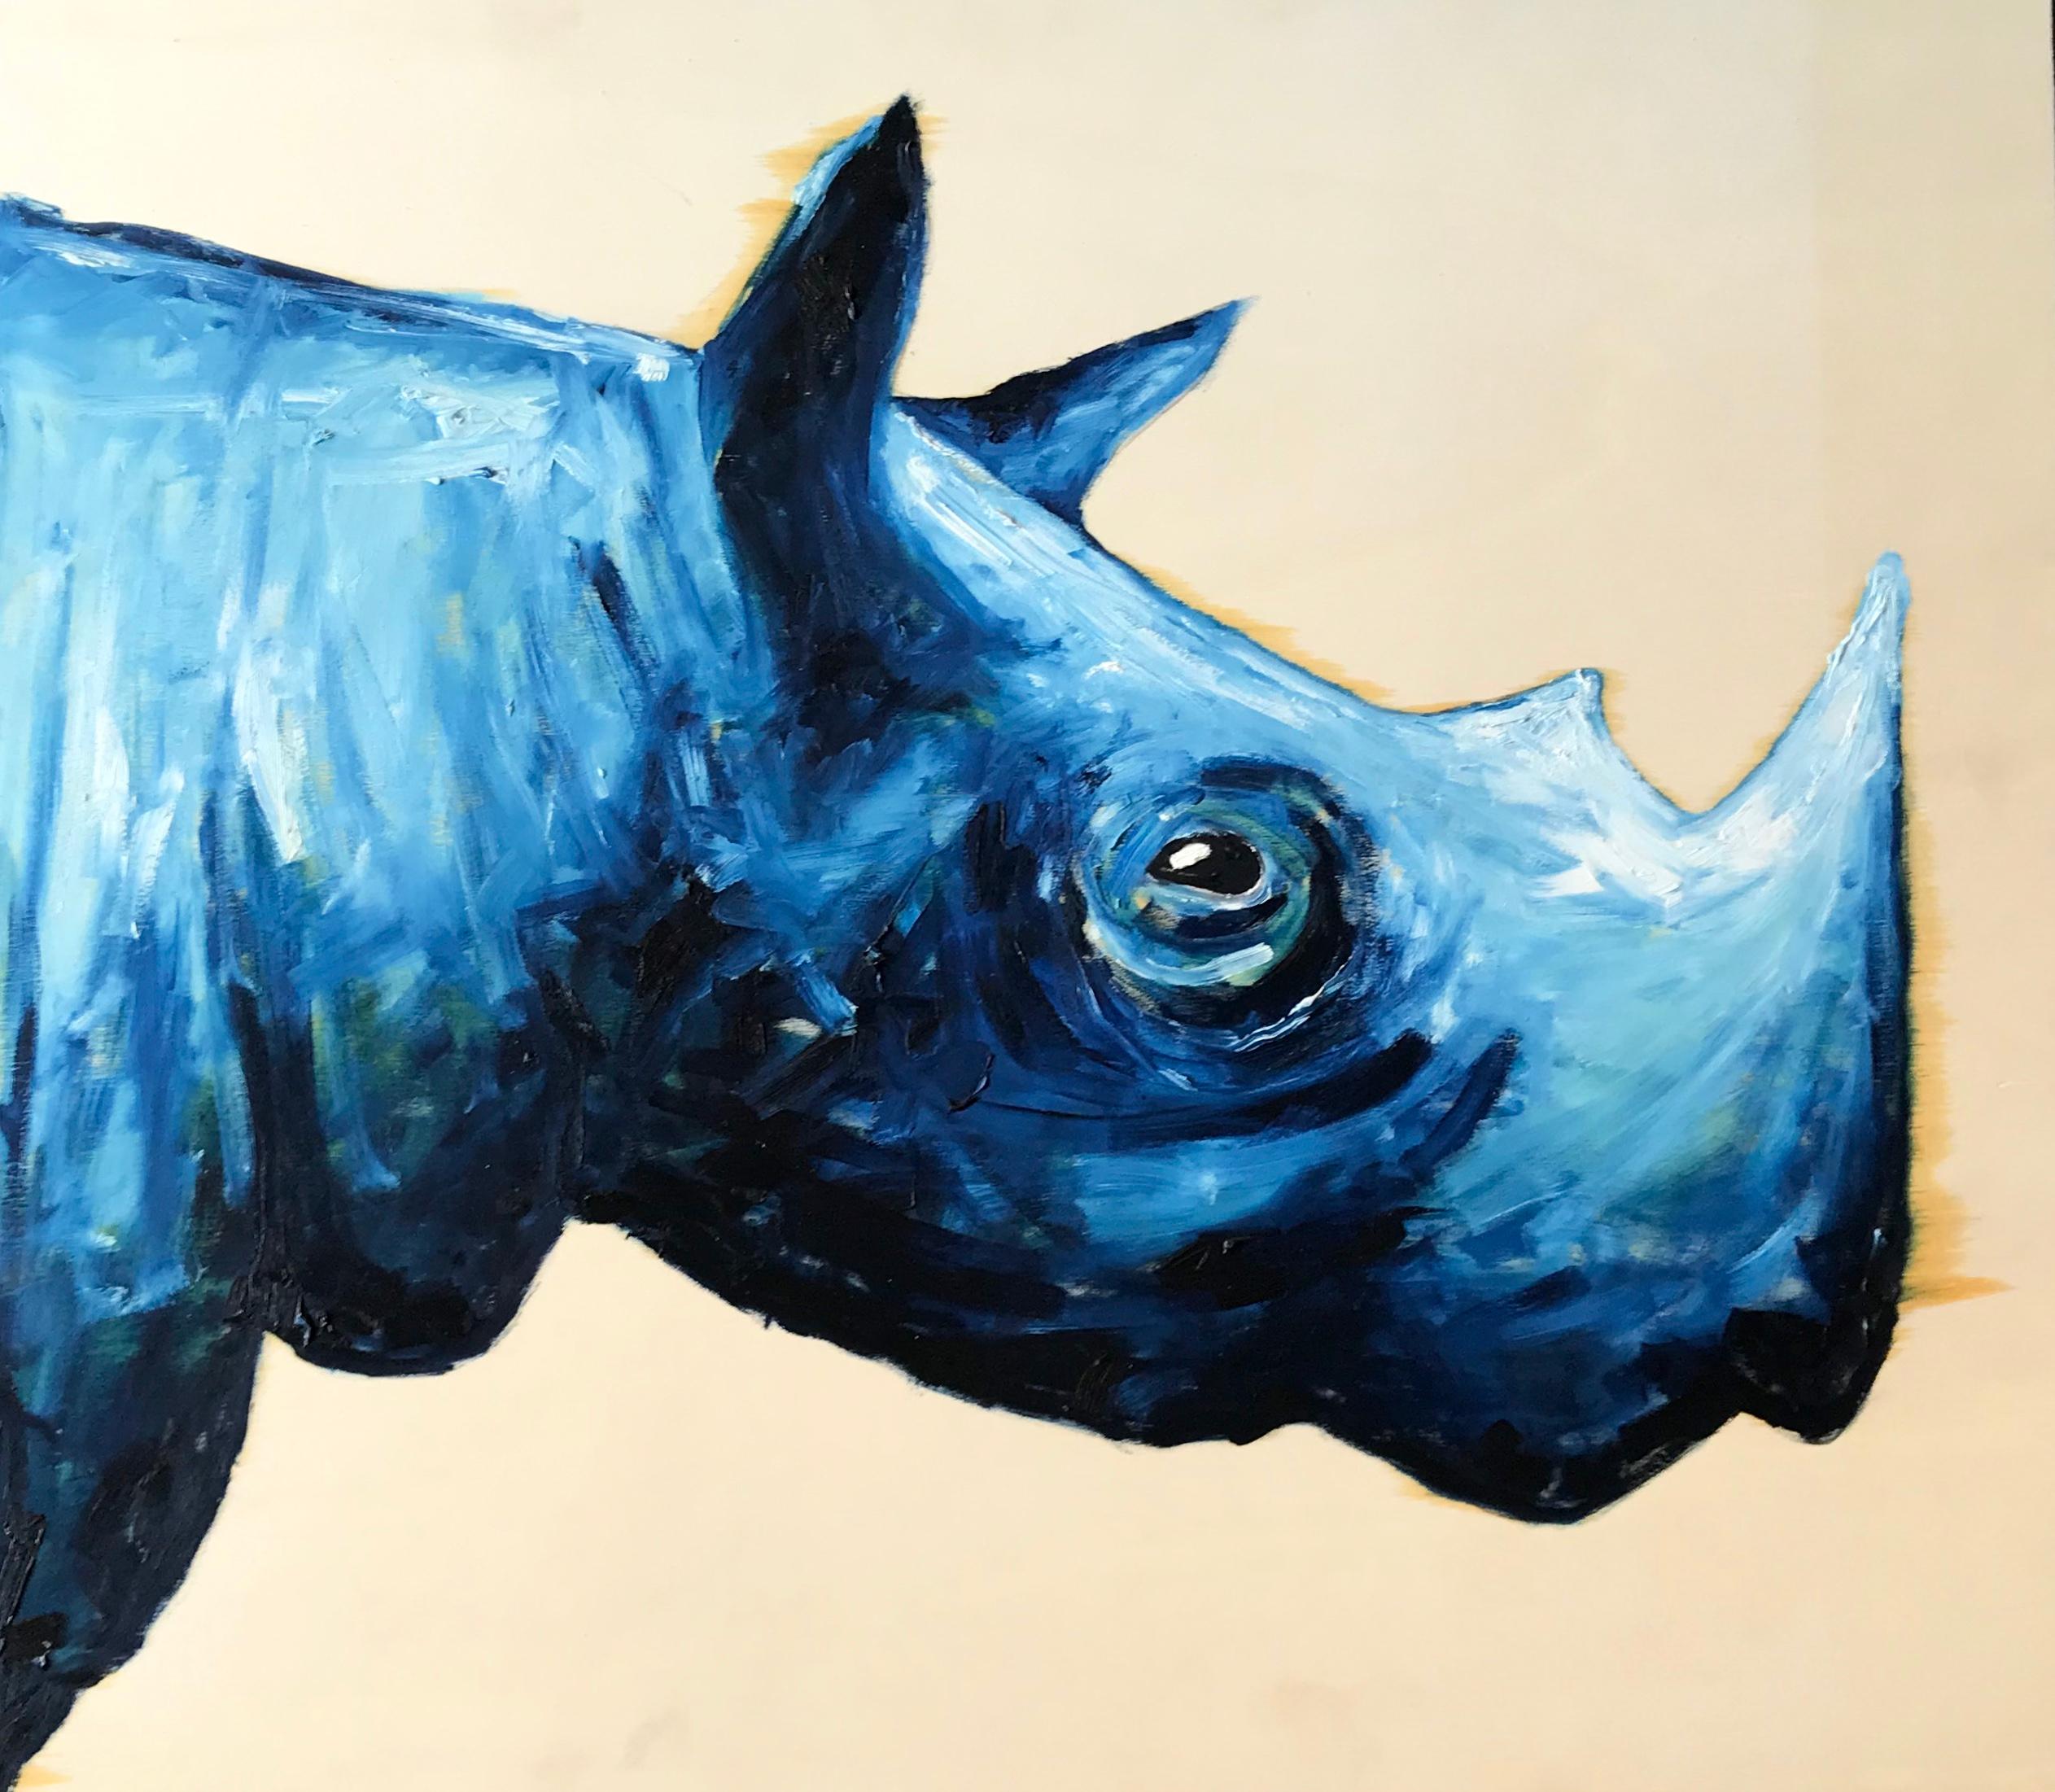 Blaues Rhinozeros. Zeitgenössisches Acrylgemälde eines sympathischen Nashorns auf einer rohen Holzplatte. Nicht signiert. Italien, 2019.
Abmessungen: 22